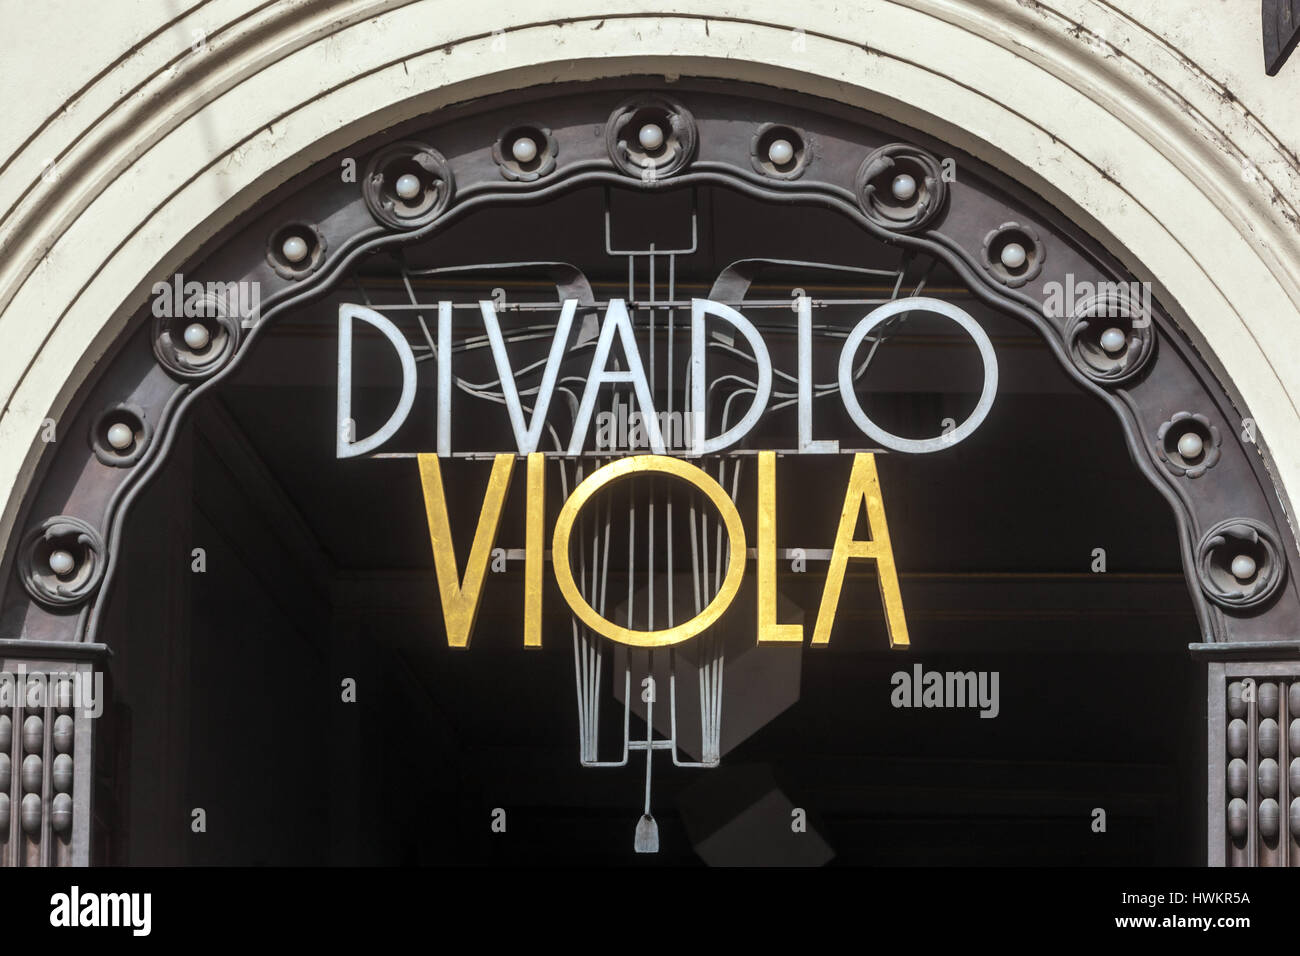 Facciata in Art Nouveau, del Divadlo Viola (Teatro) su Narodni trida. Praga Repubblica Ceca, Europa Foto Stock